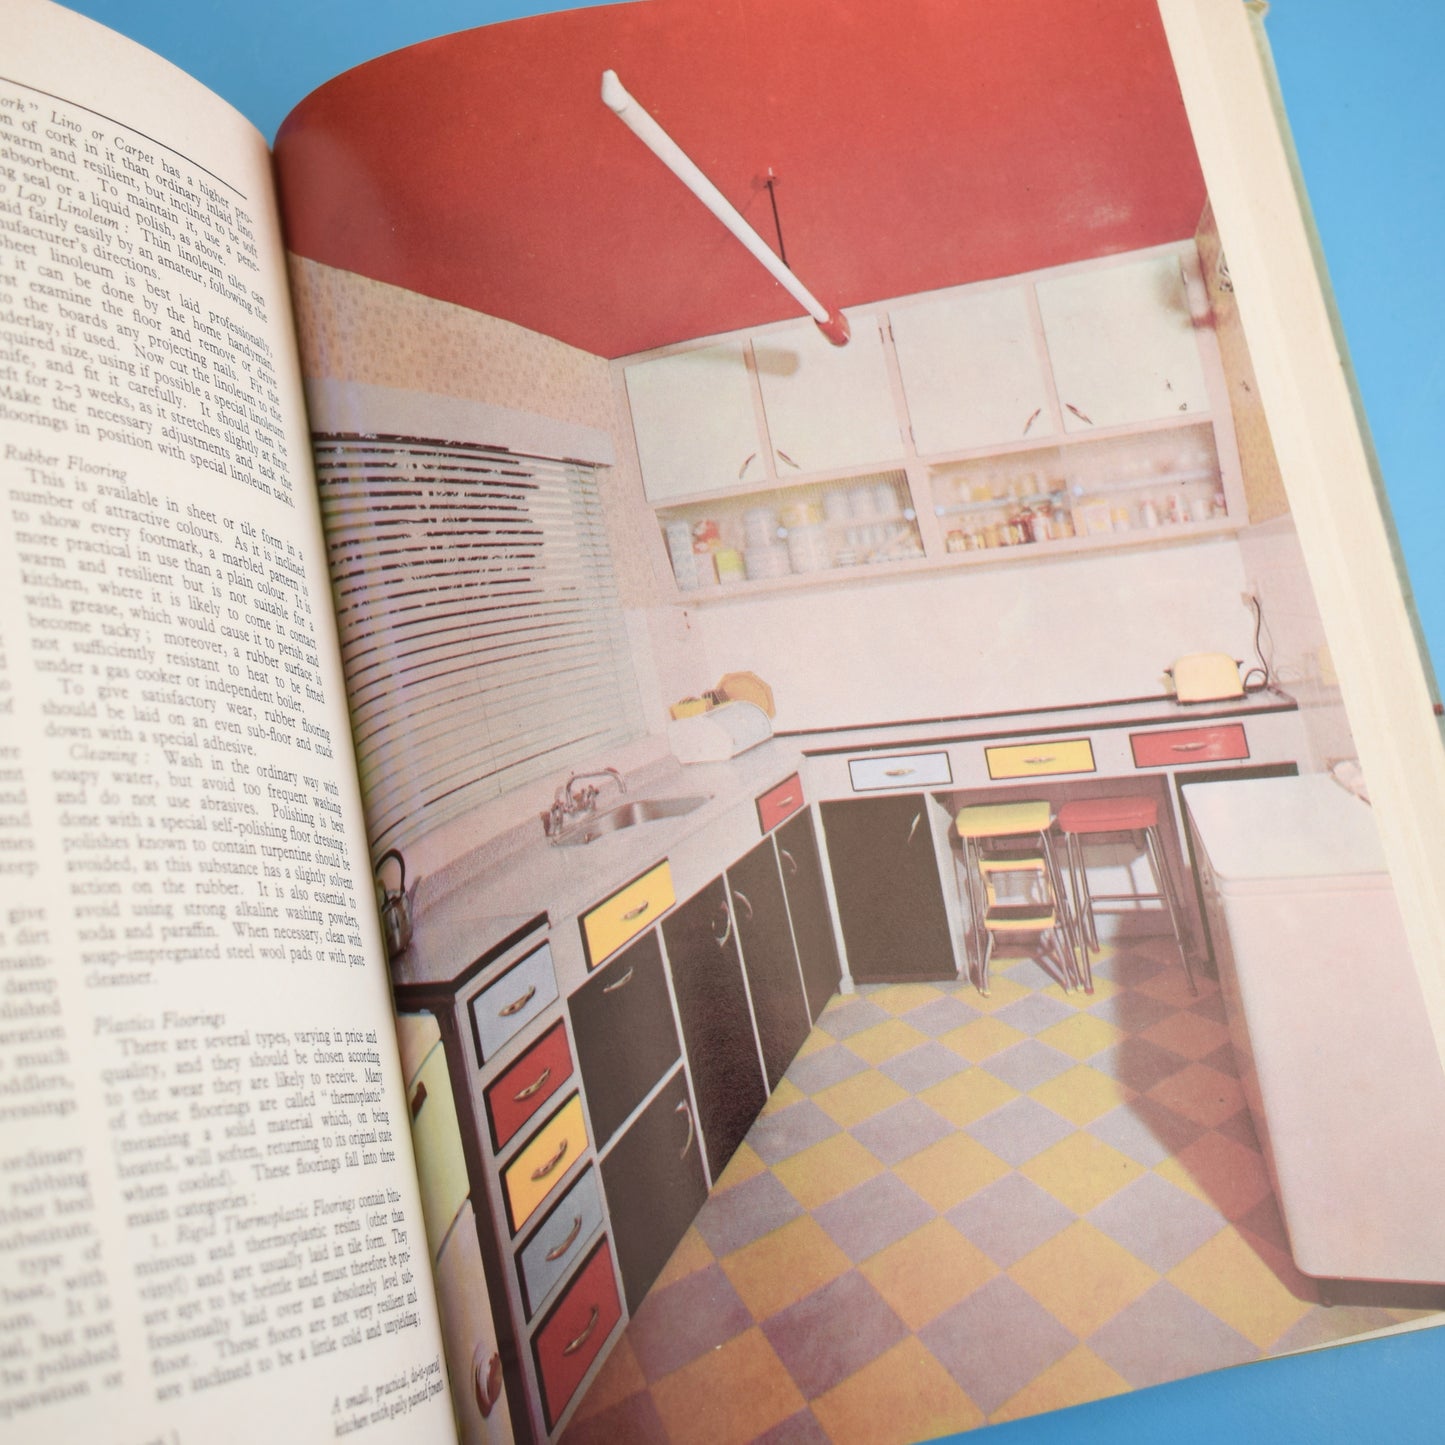 Vintage 1960s Good Housekeeping Book